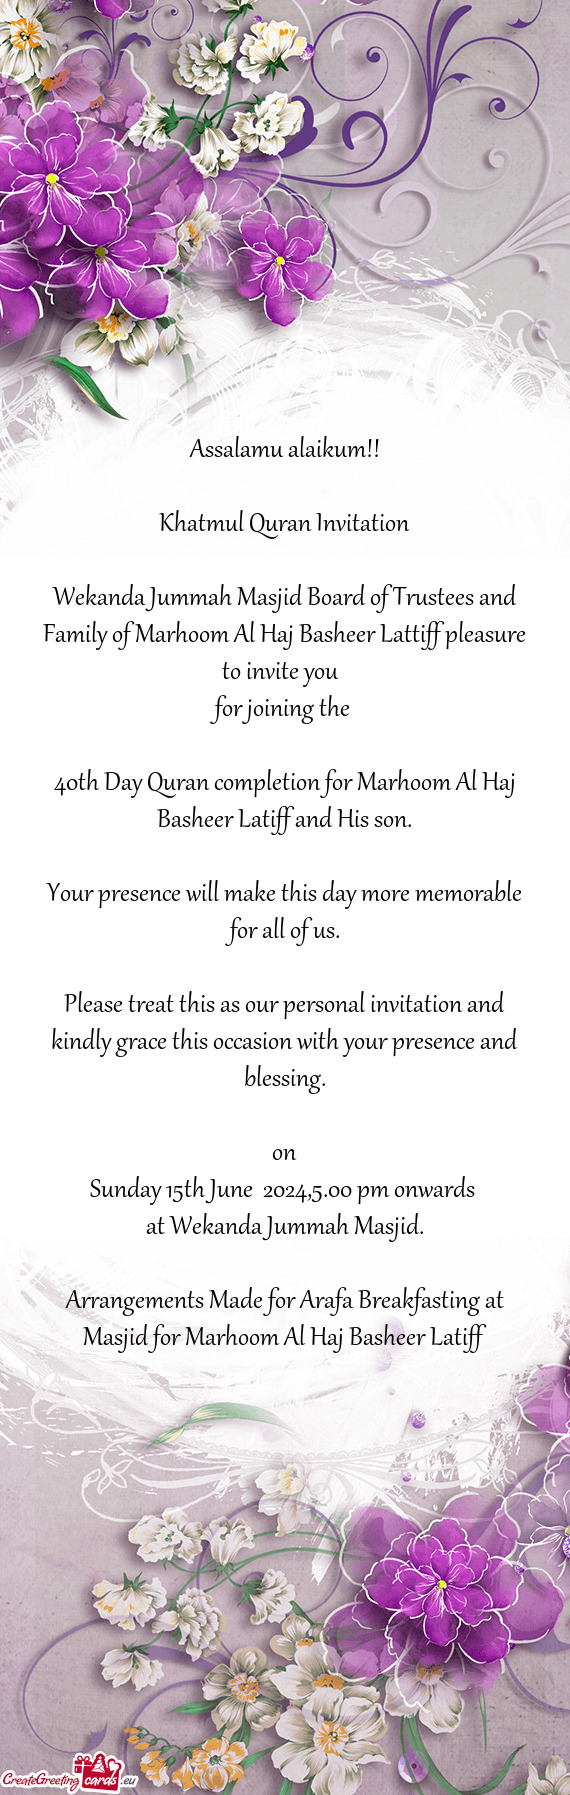 Wekanda Jummah Masjid Board of Trustees and Family of Marhoom Al Haj Basheer Lattiff pleasure to inv